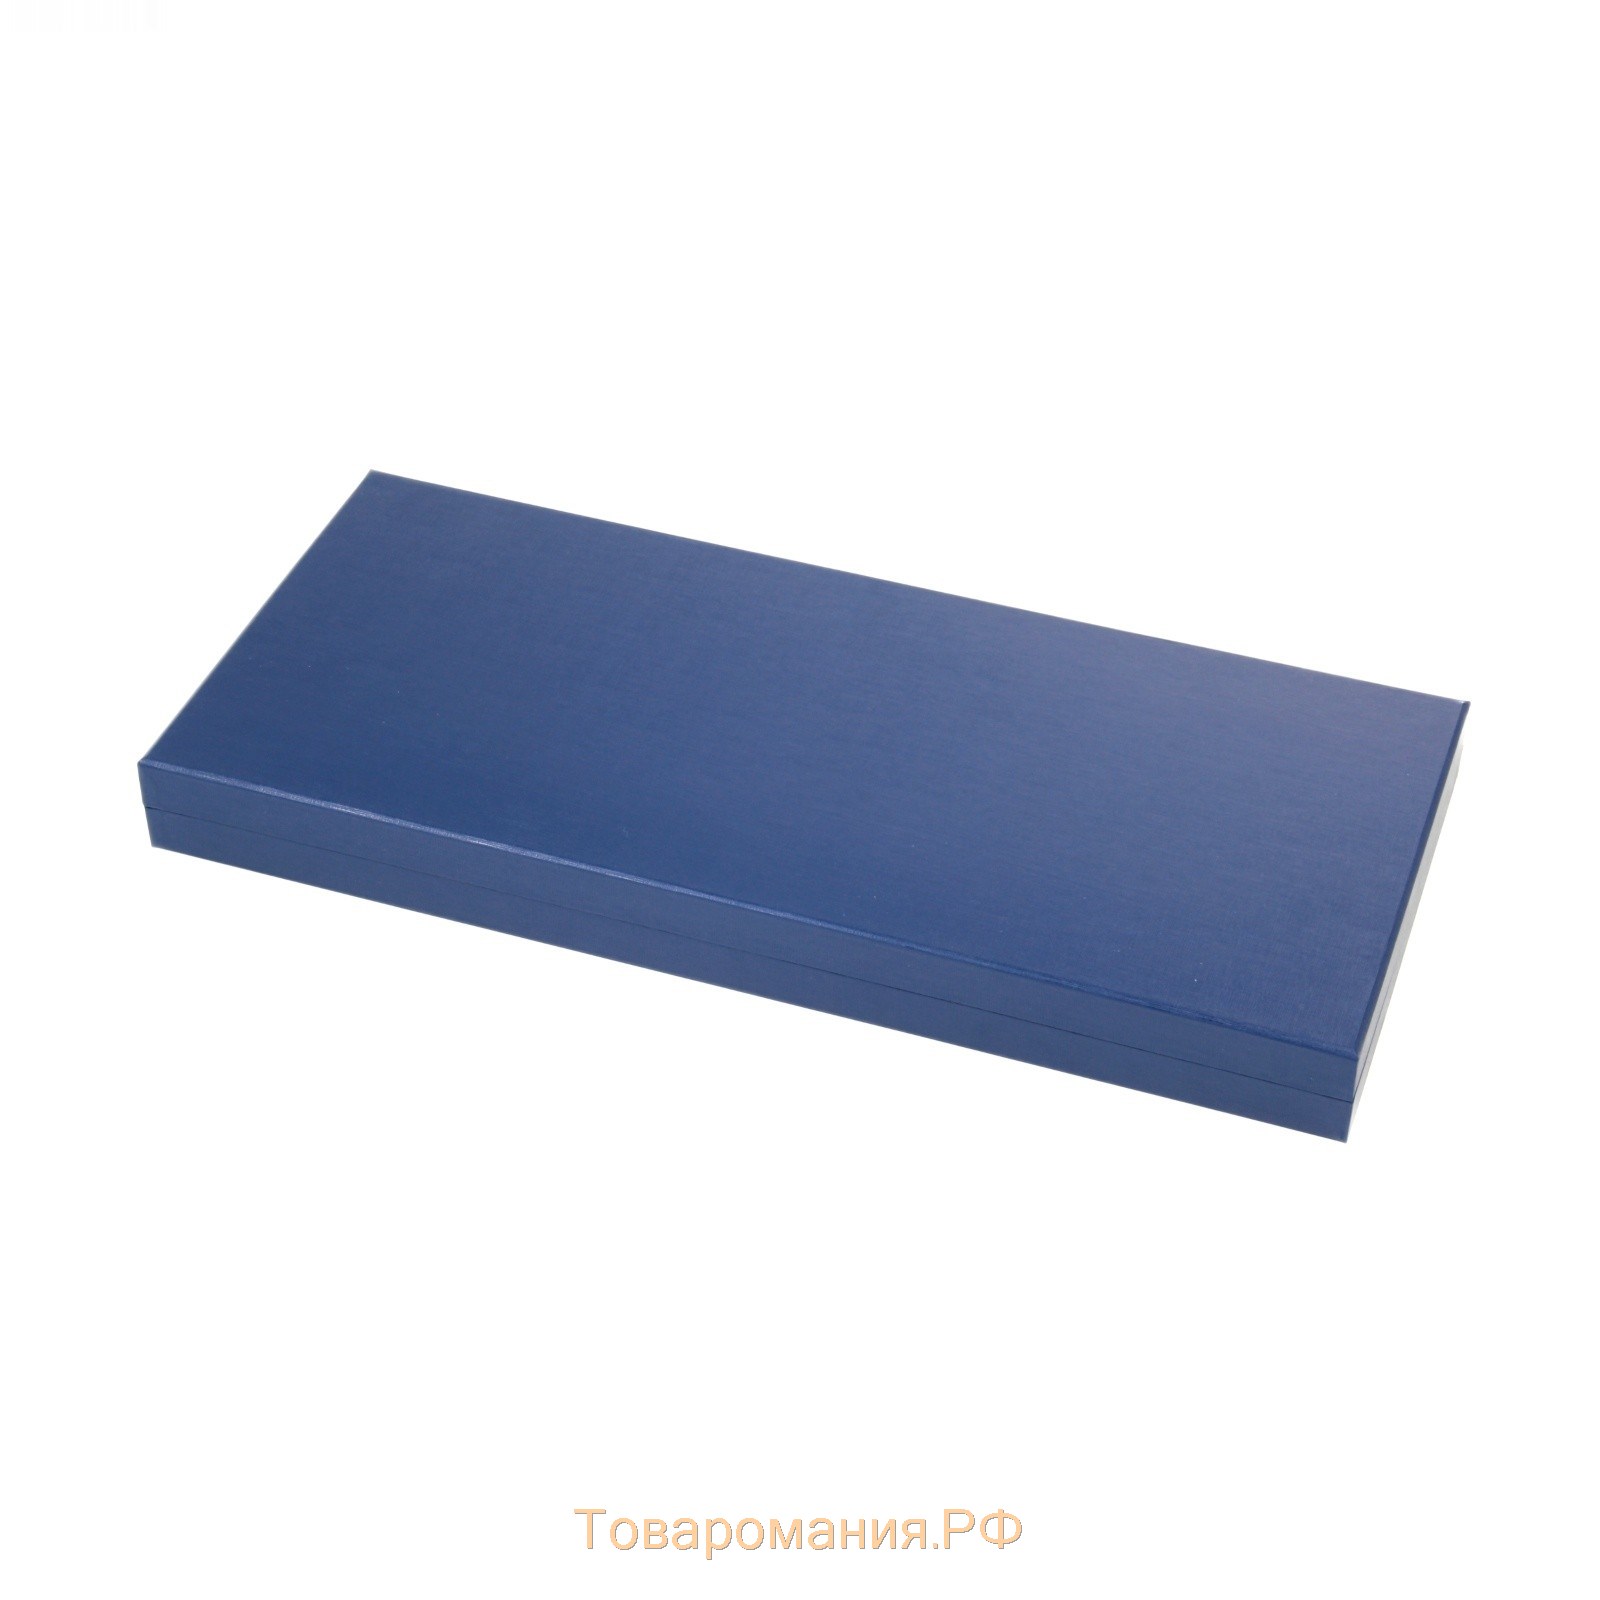 Набор столовый «Уралочка», 42 предмета, толщина 2 мм, декоративная коробка, цвет серебряный